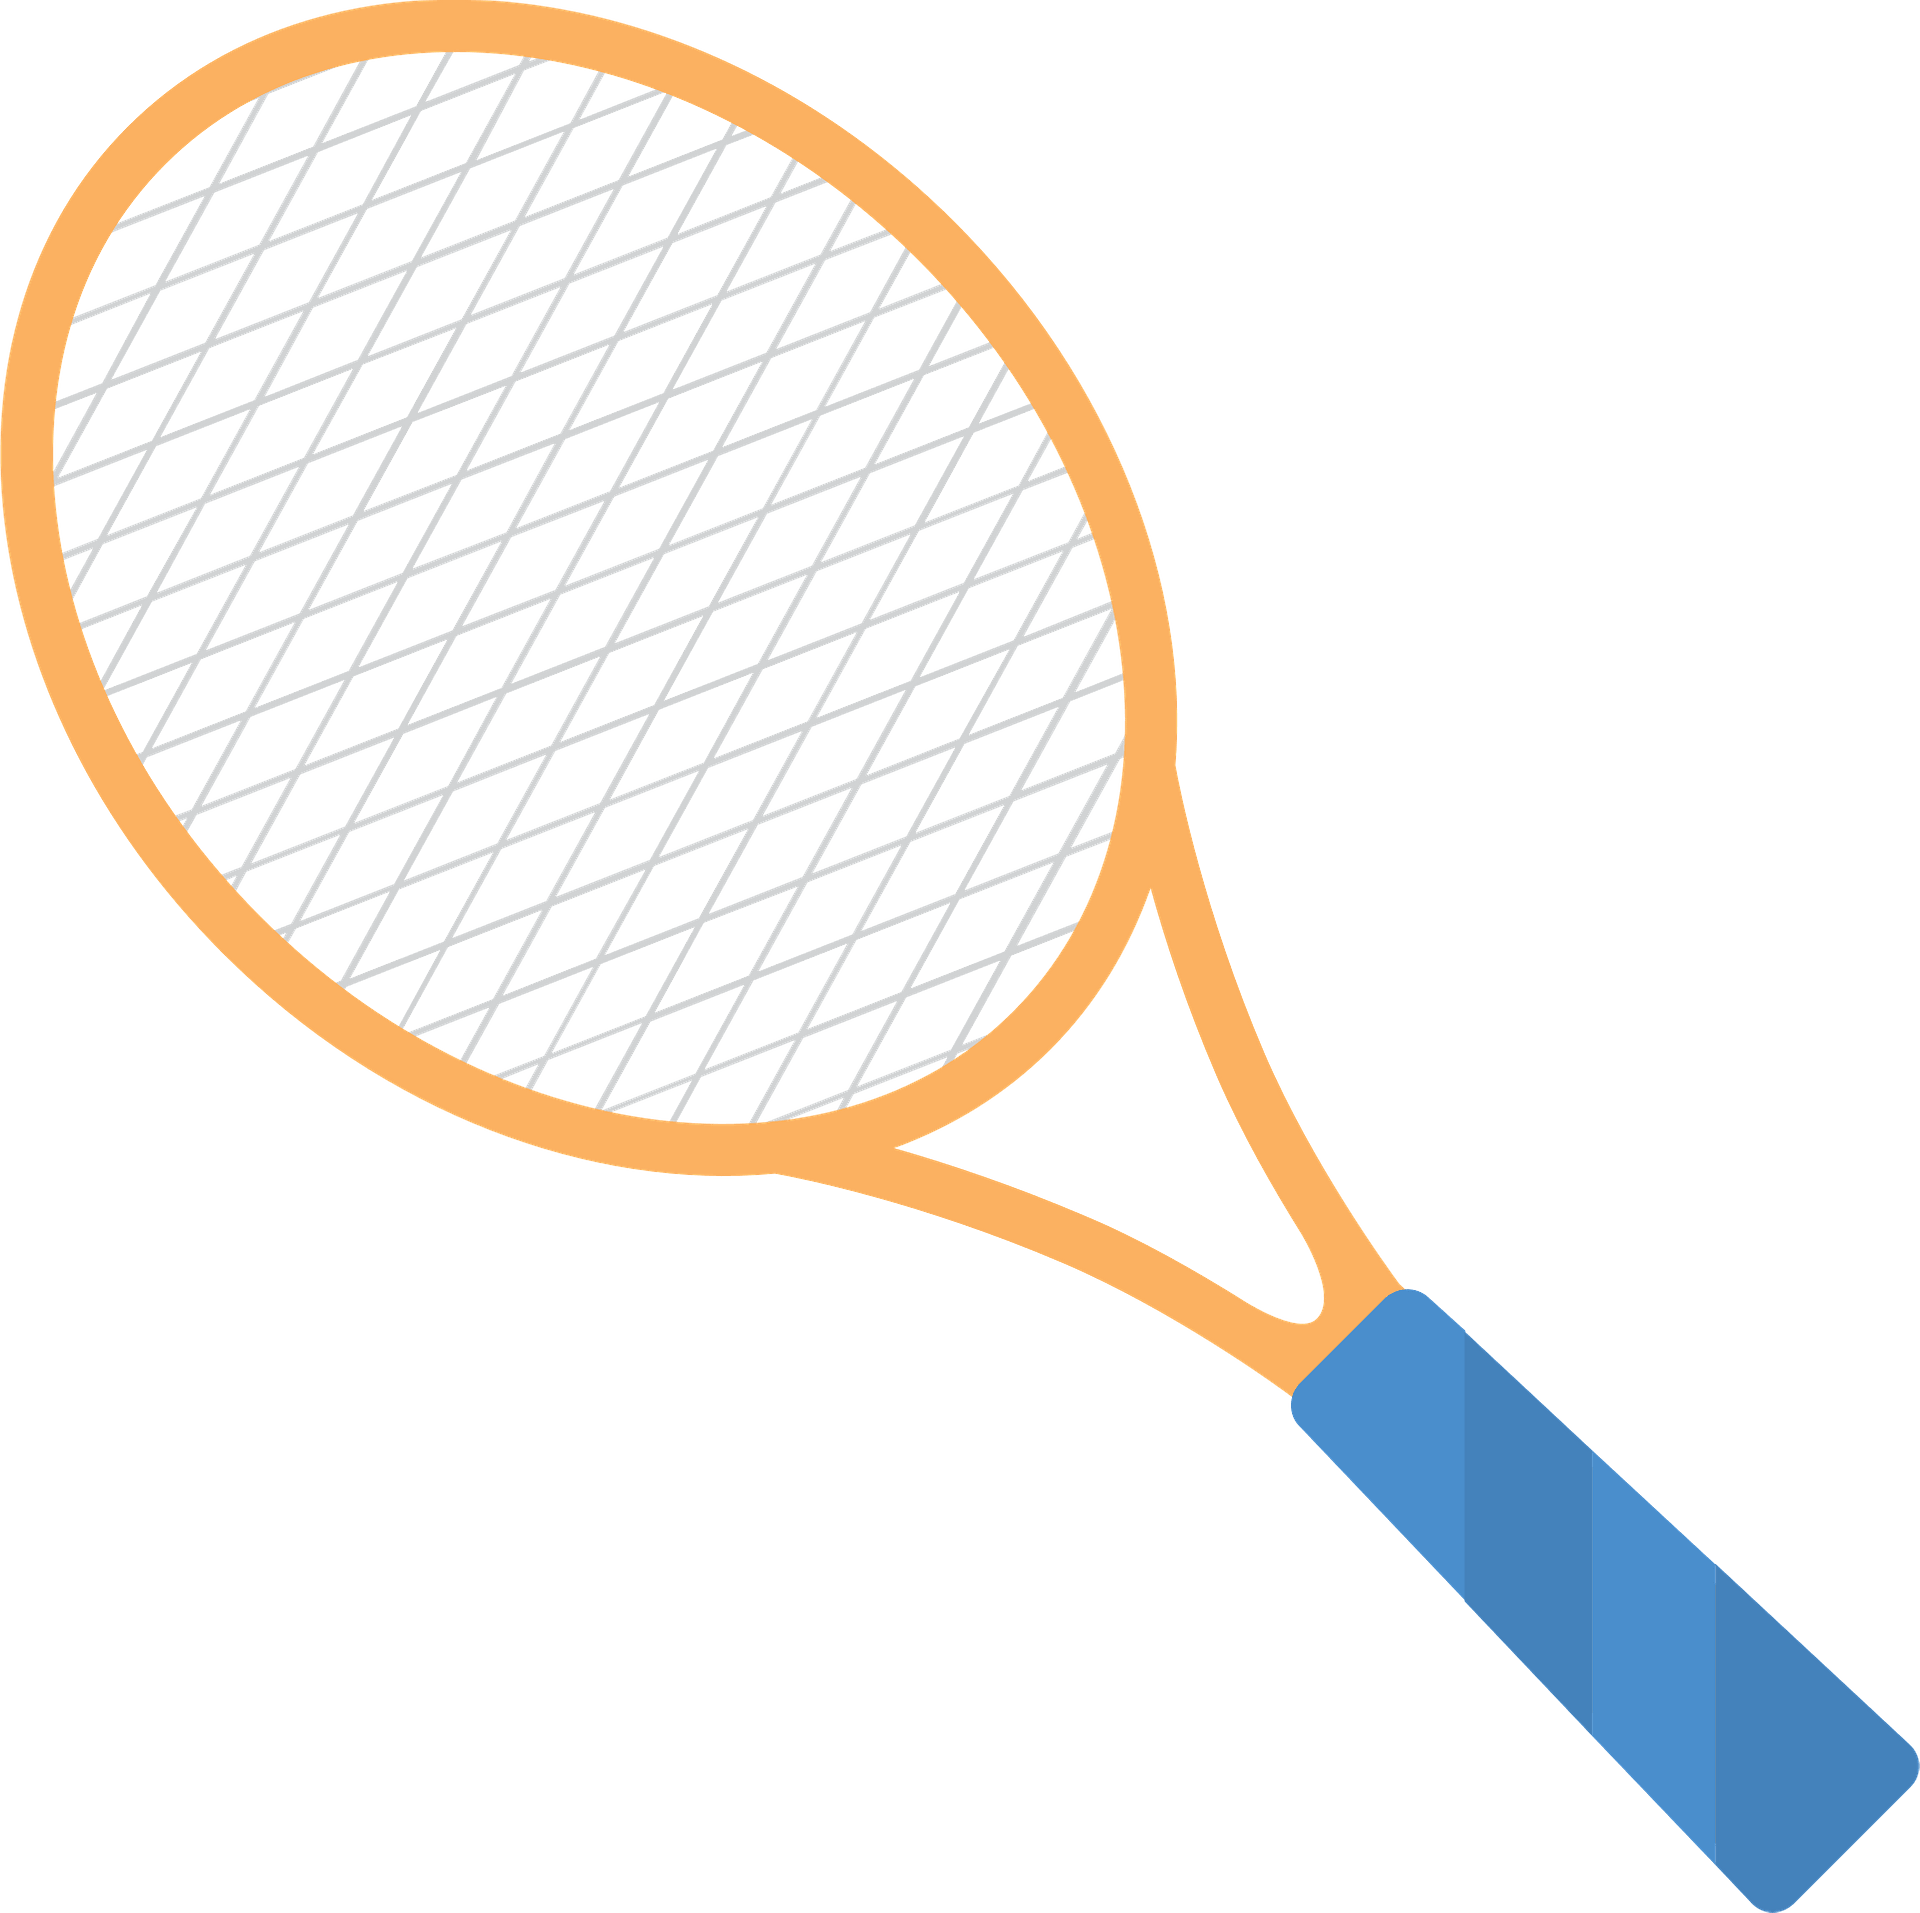 TENNIS RACKET SVG Tennis Racket Clipart Tennis Racket Png - Clipart ...